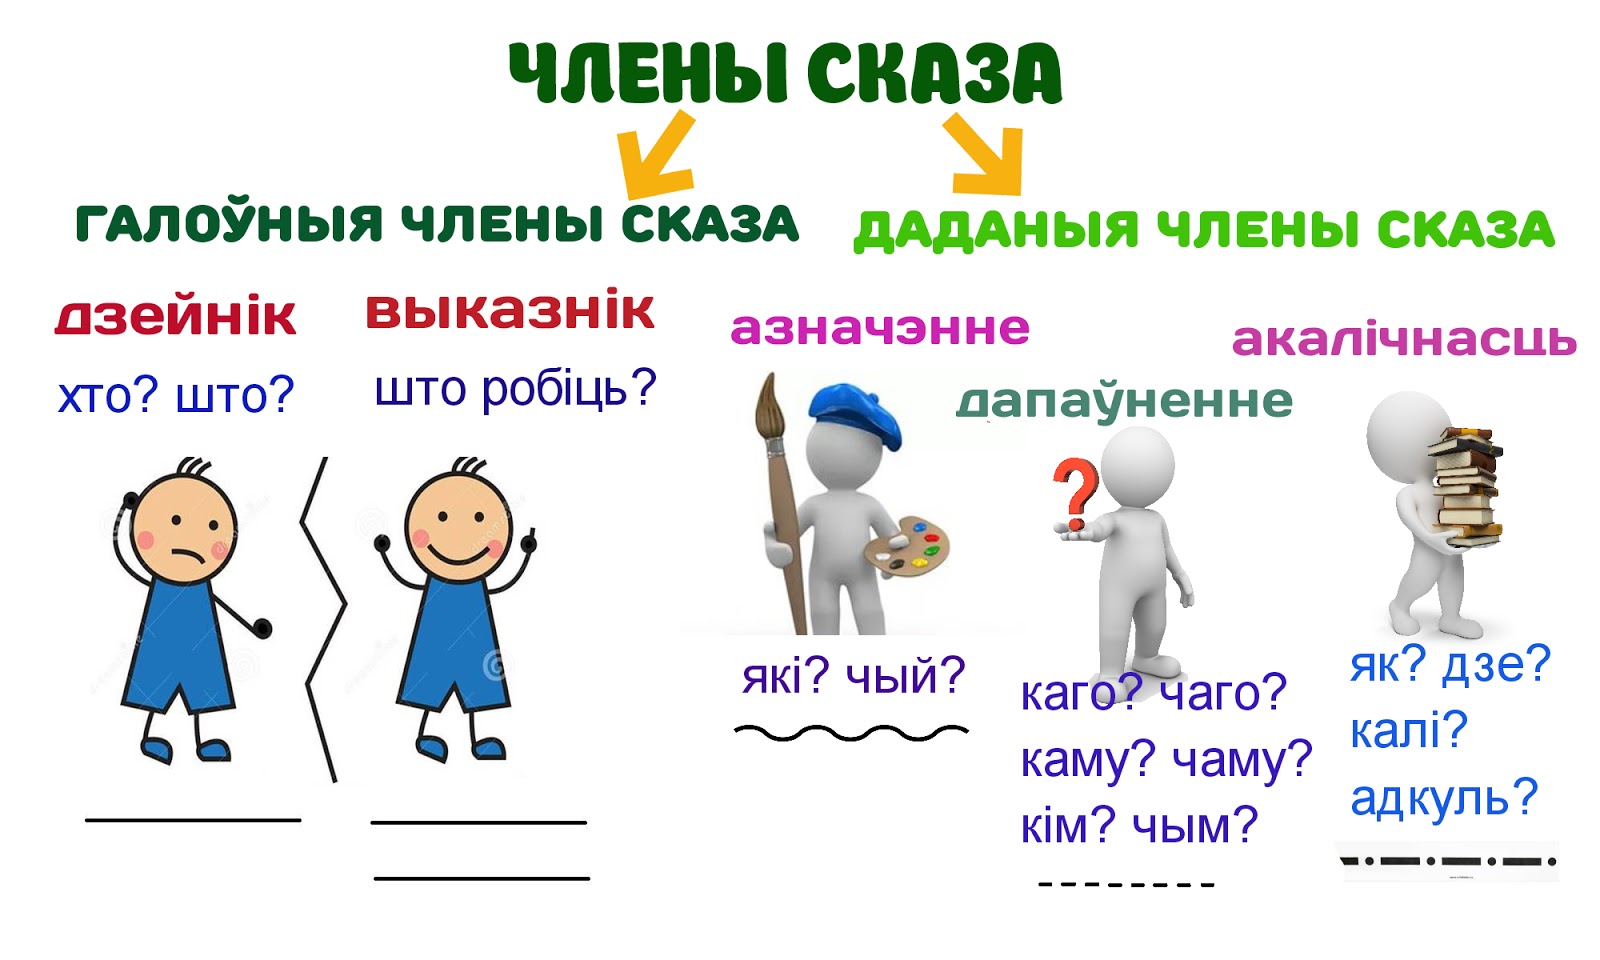 белорусский язык все члены сказа (120) фото